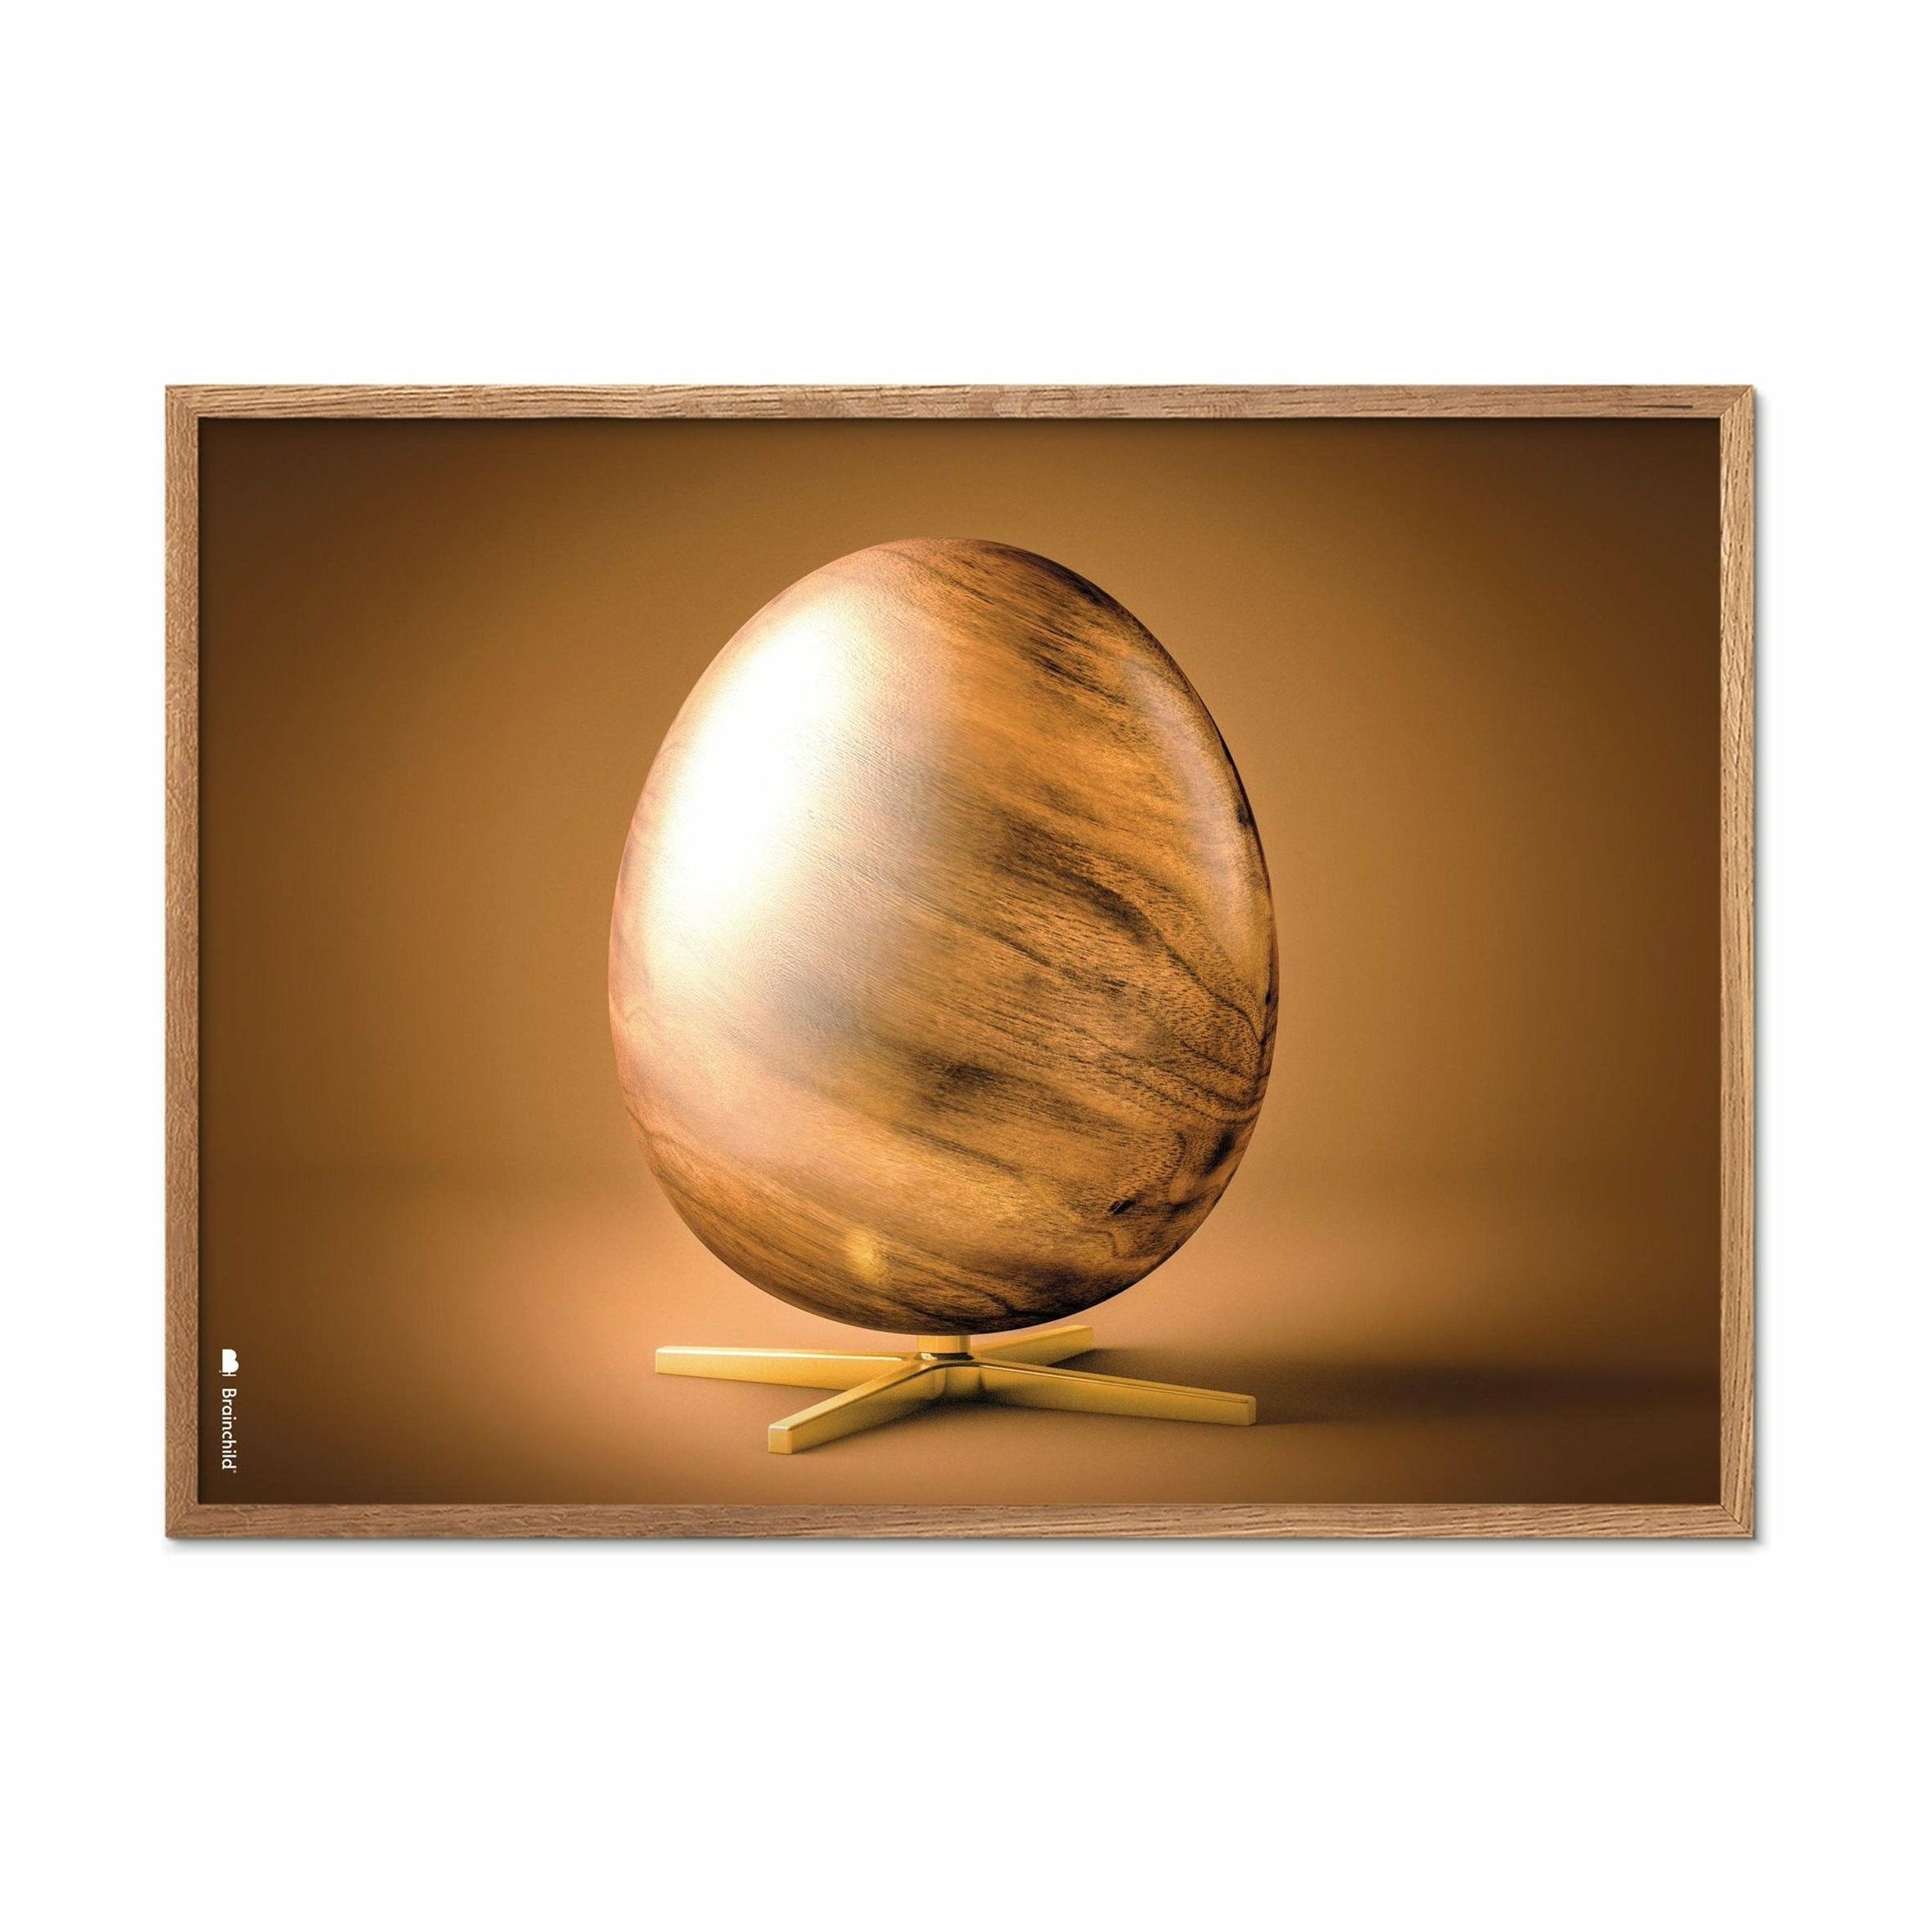 创生鸡蛋交叉格式海报，由浅木制成的框架30x40厘米，棕色